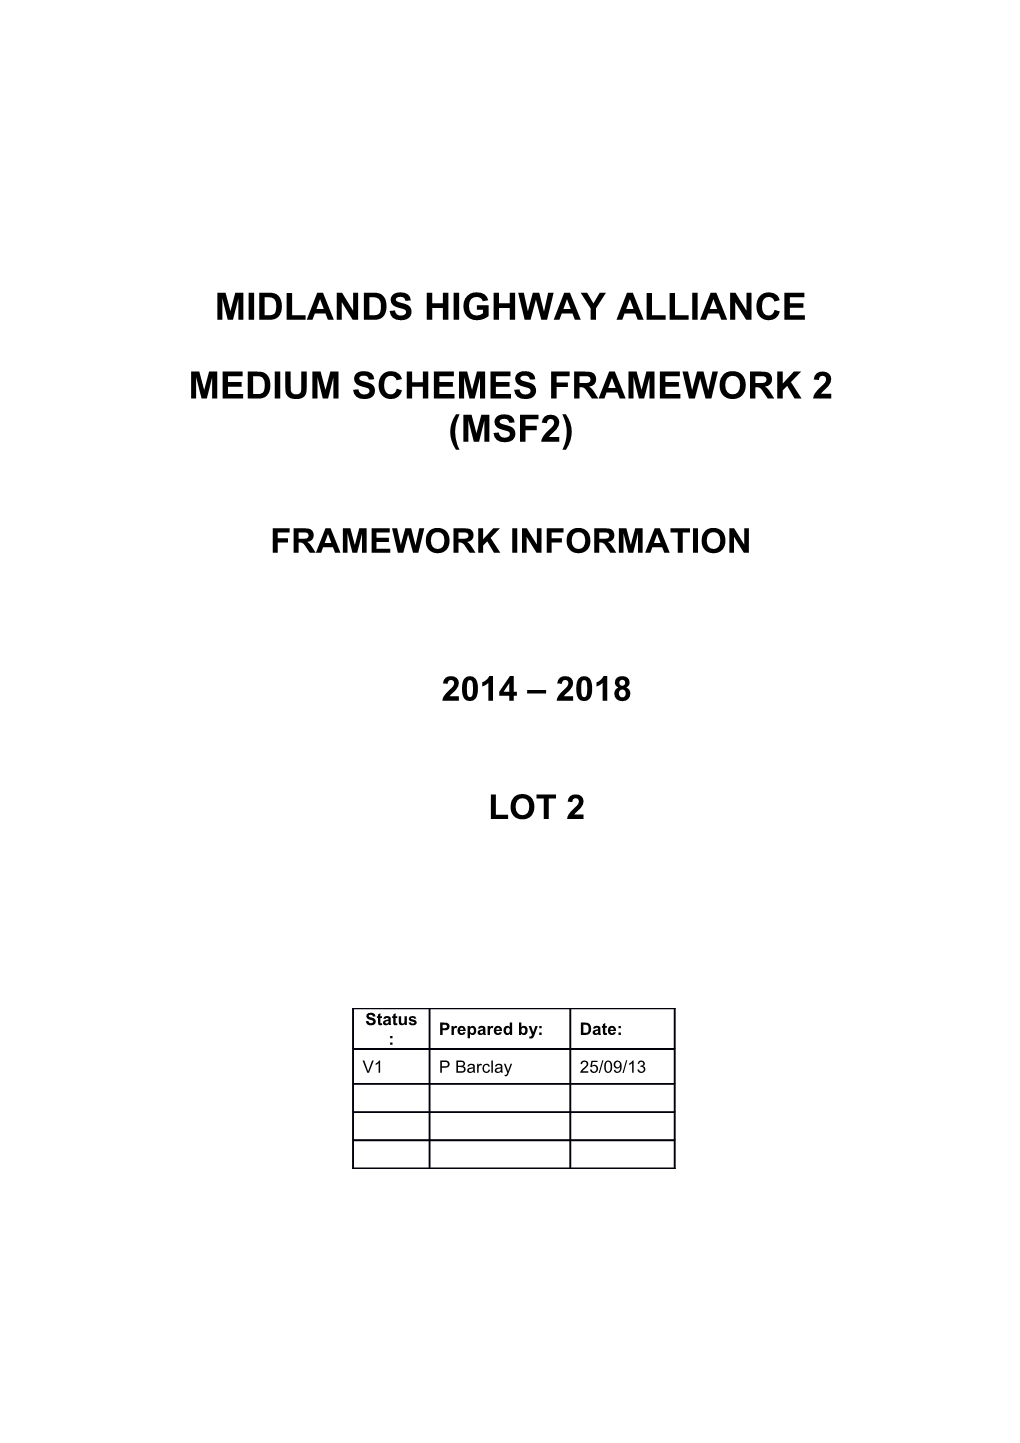 MSF2 Framework Information LOT 2